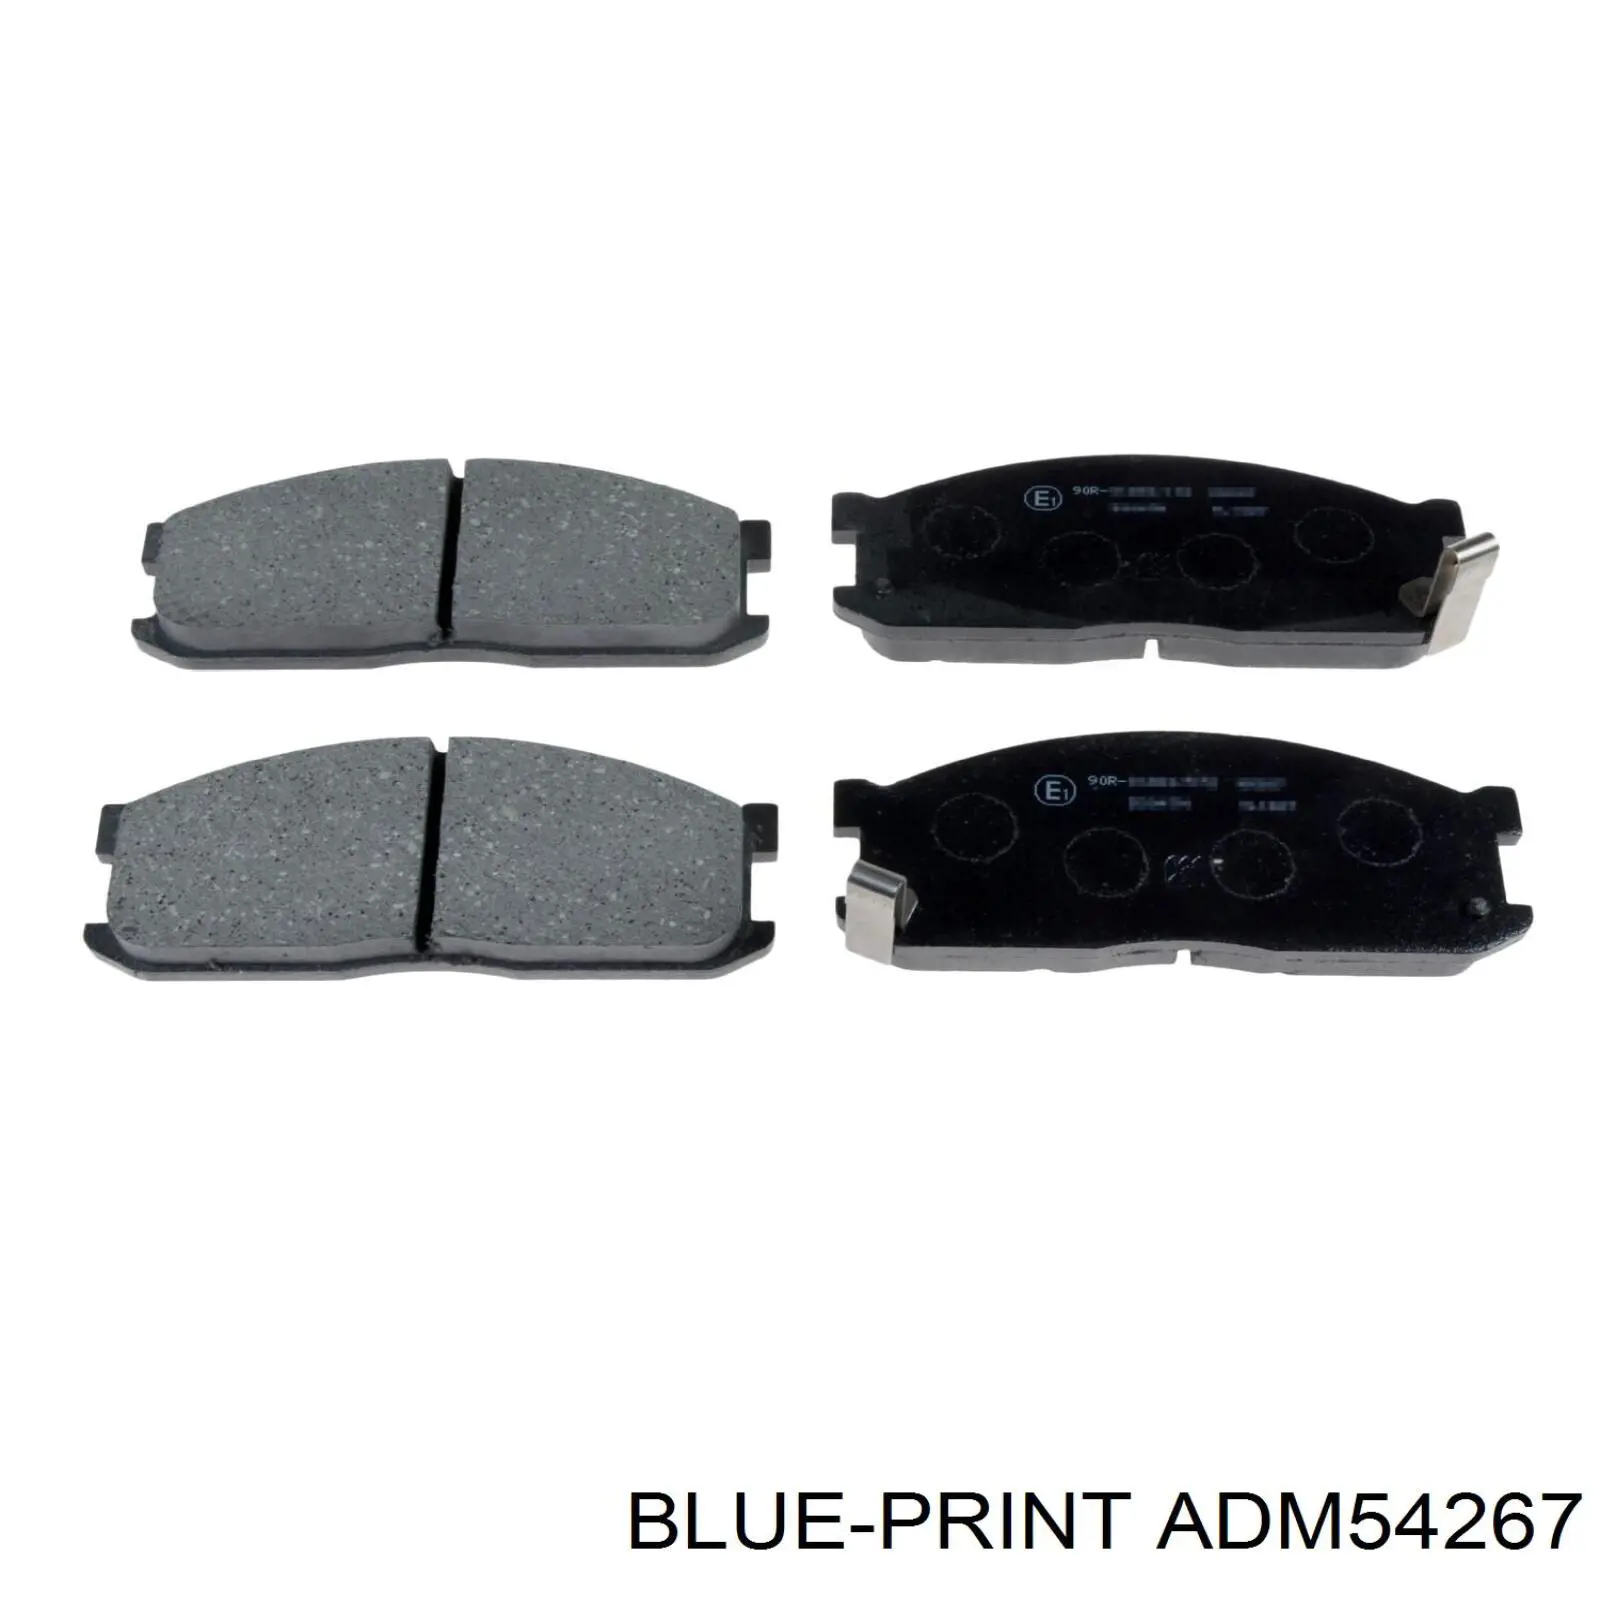 ADM54267 Blue Print pastillas de freno delanteras